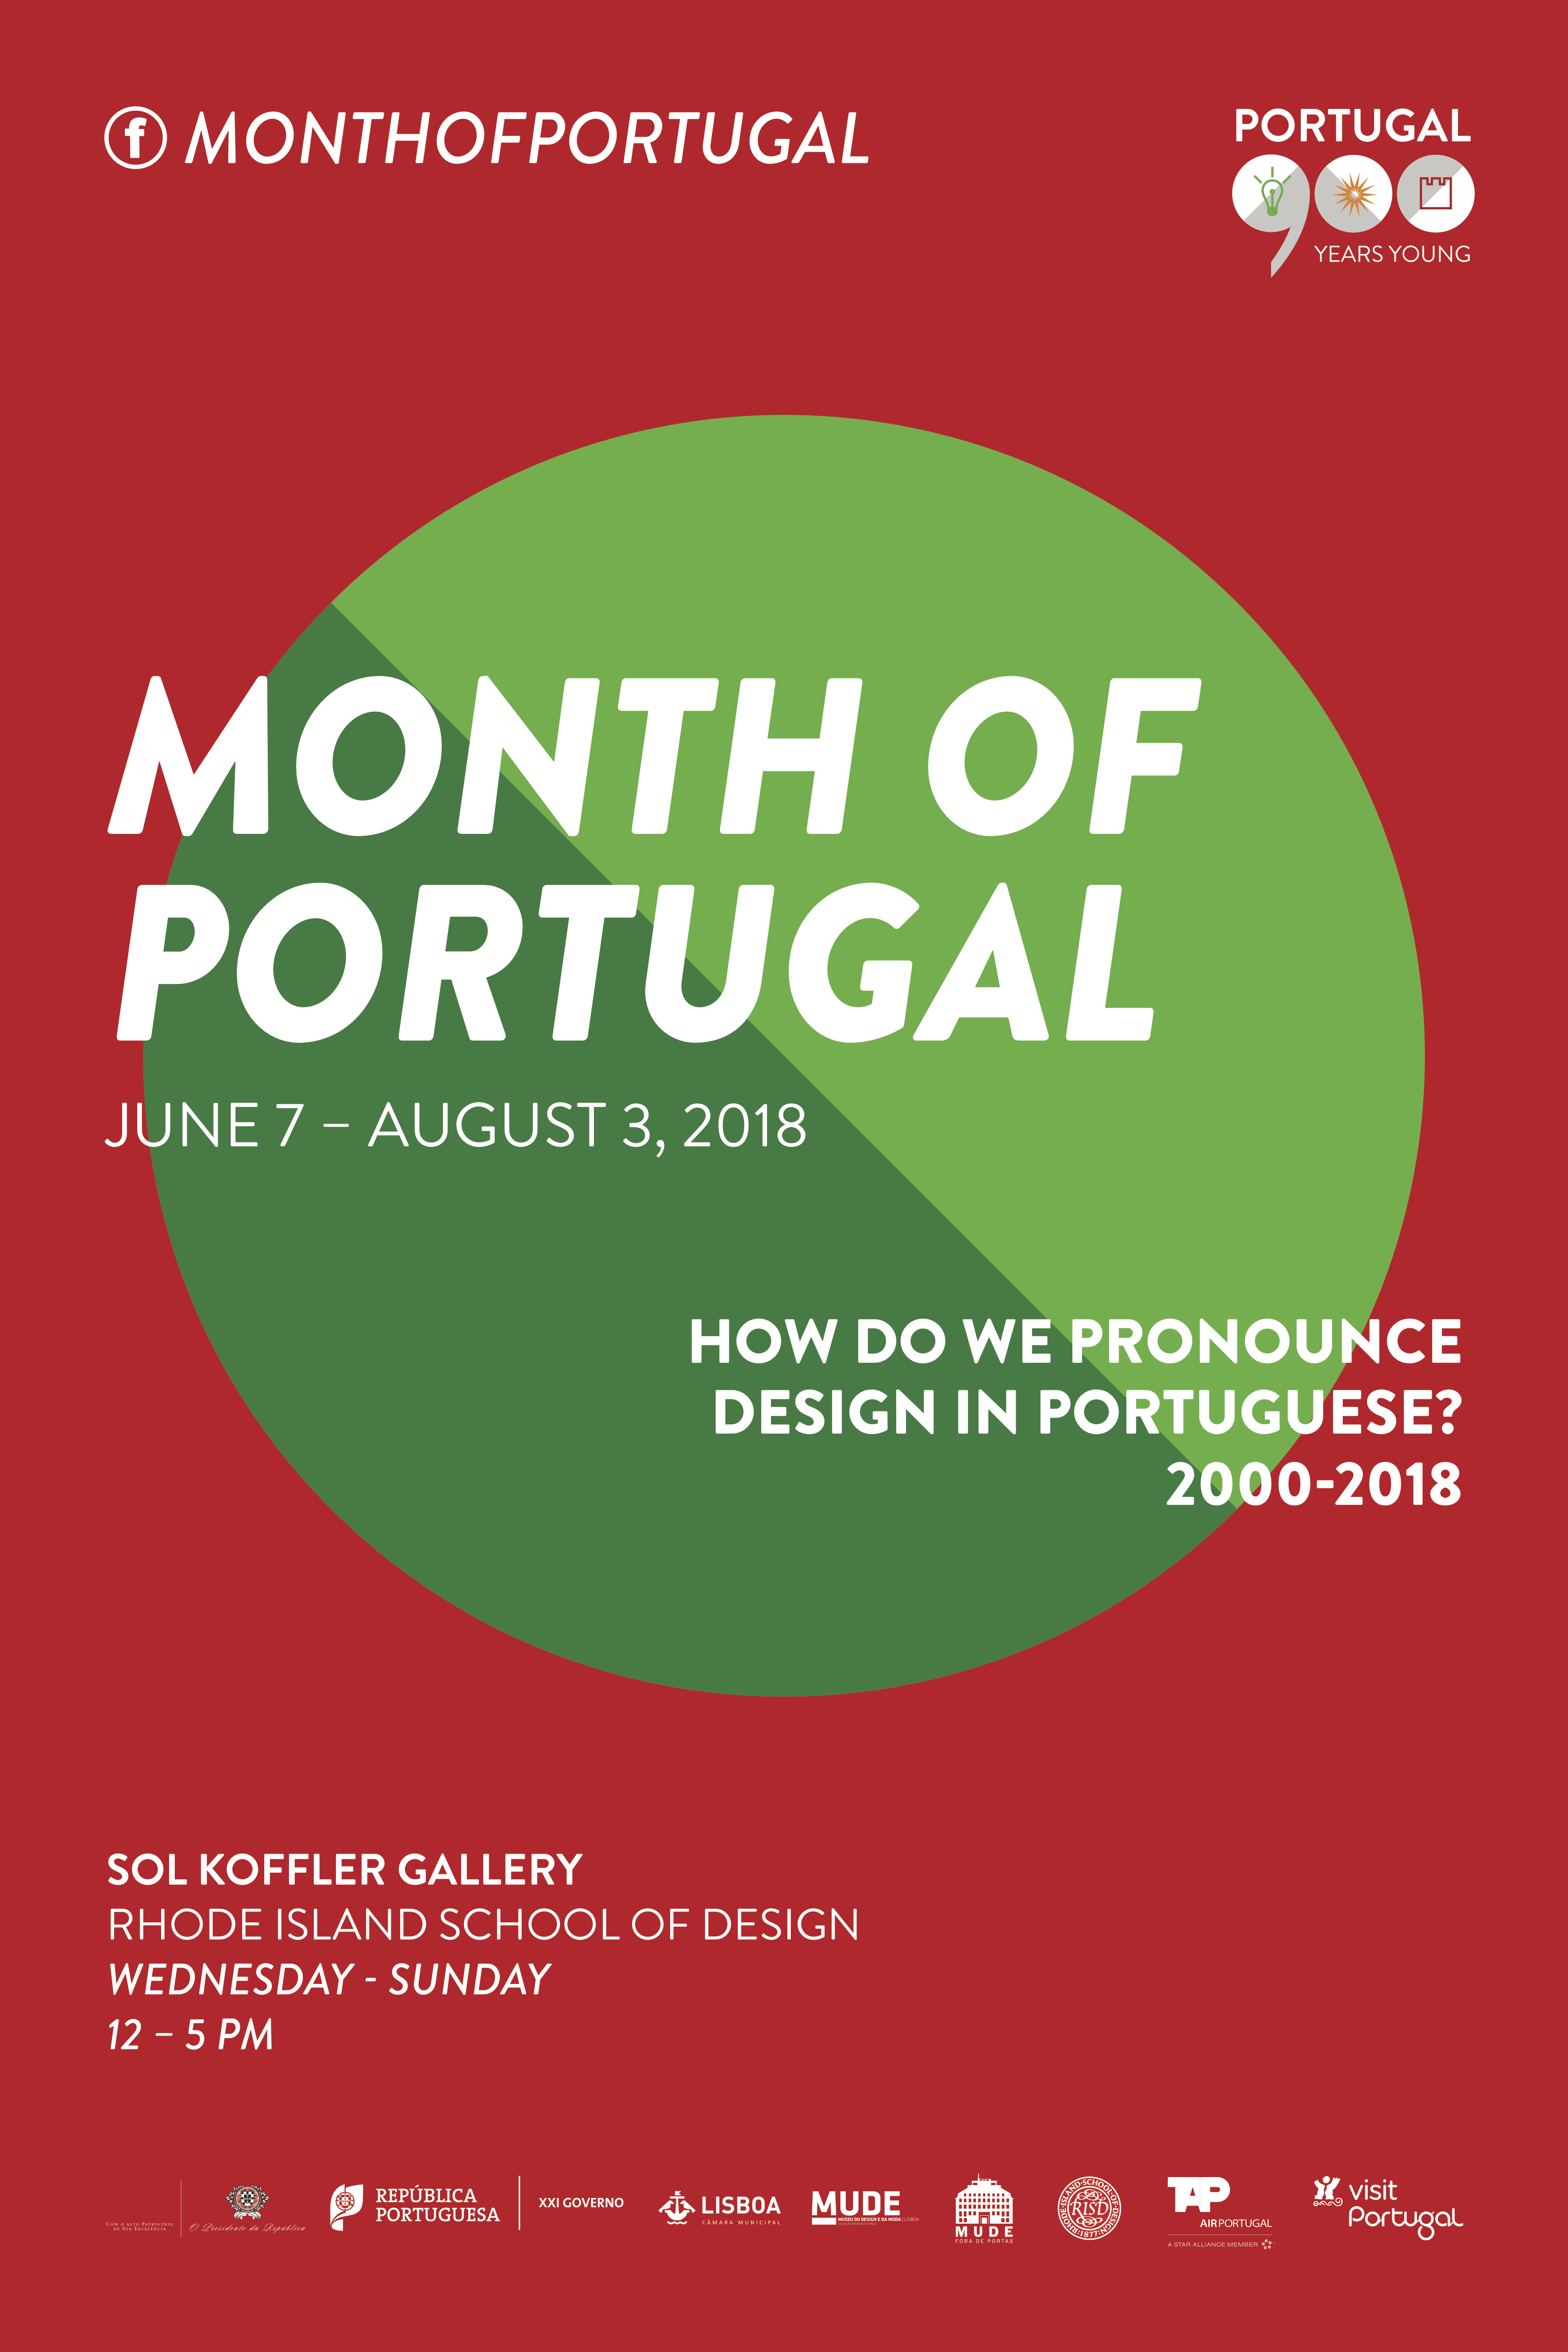 Doutorando Rui Grazina expõe na Exposição Como se pronuncia design em Português? 